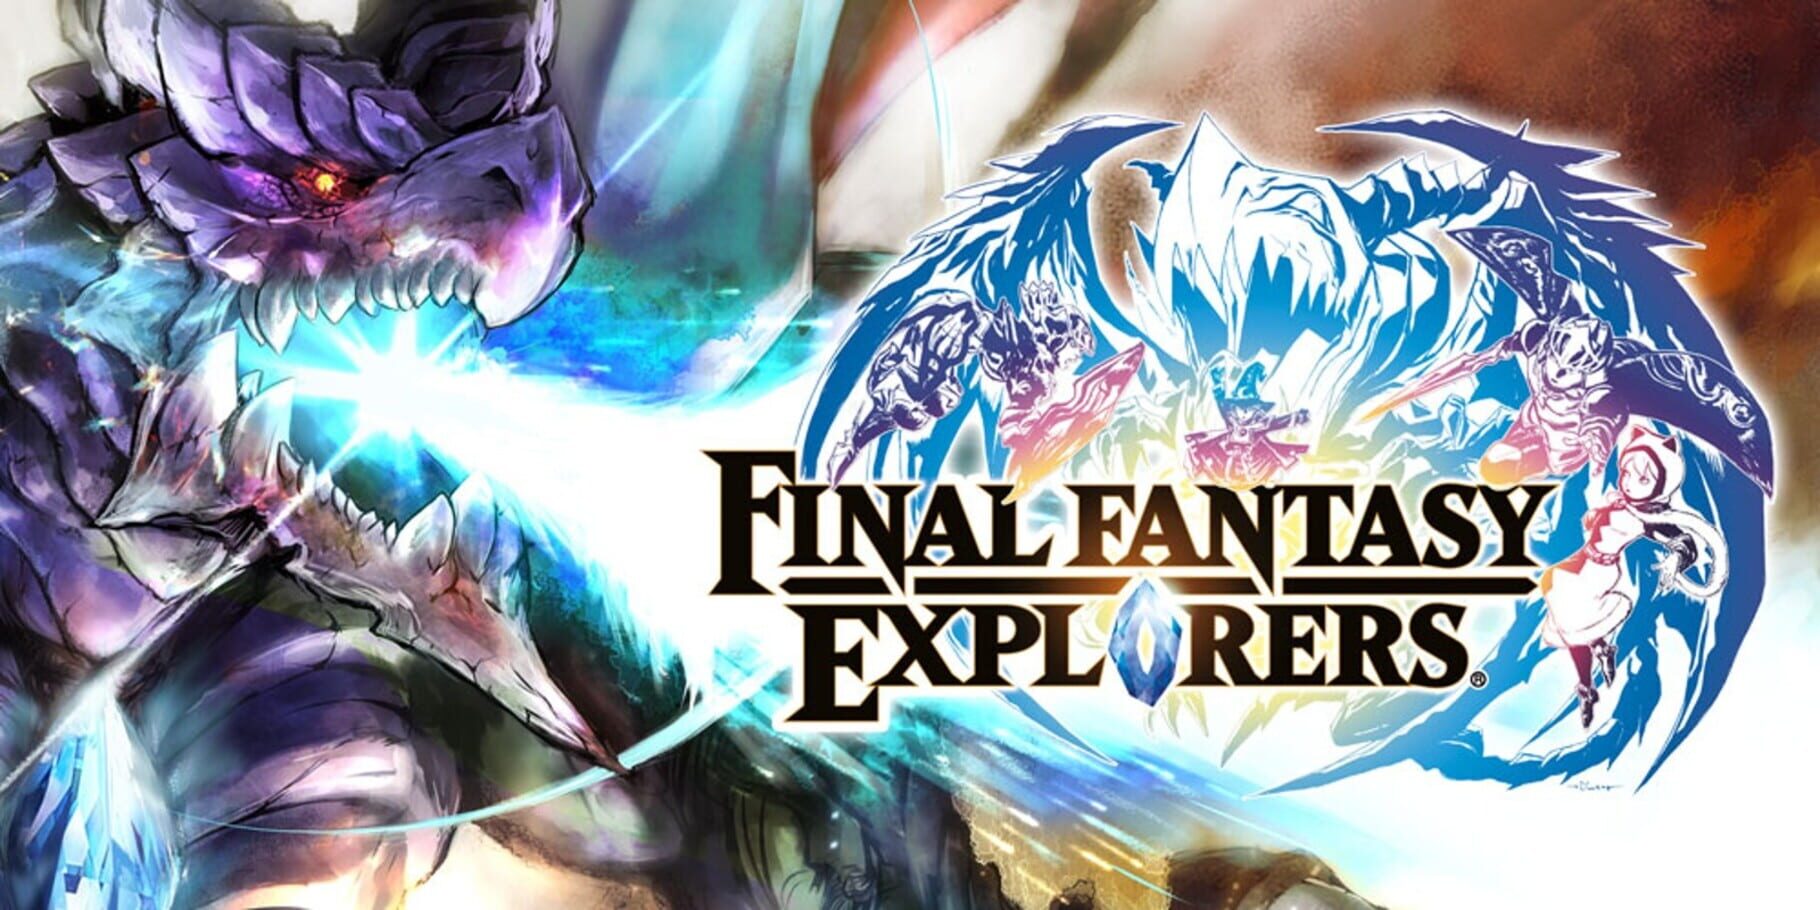 Arte - Final Fantasy: Explorers